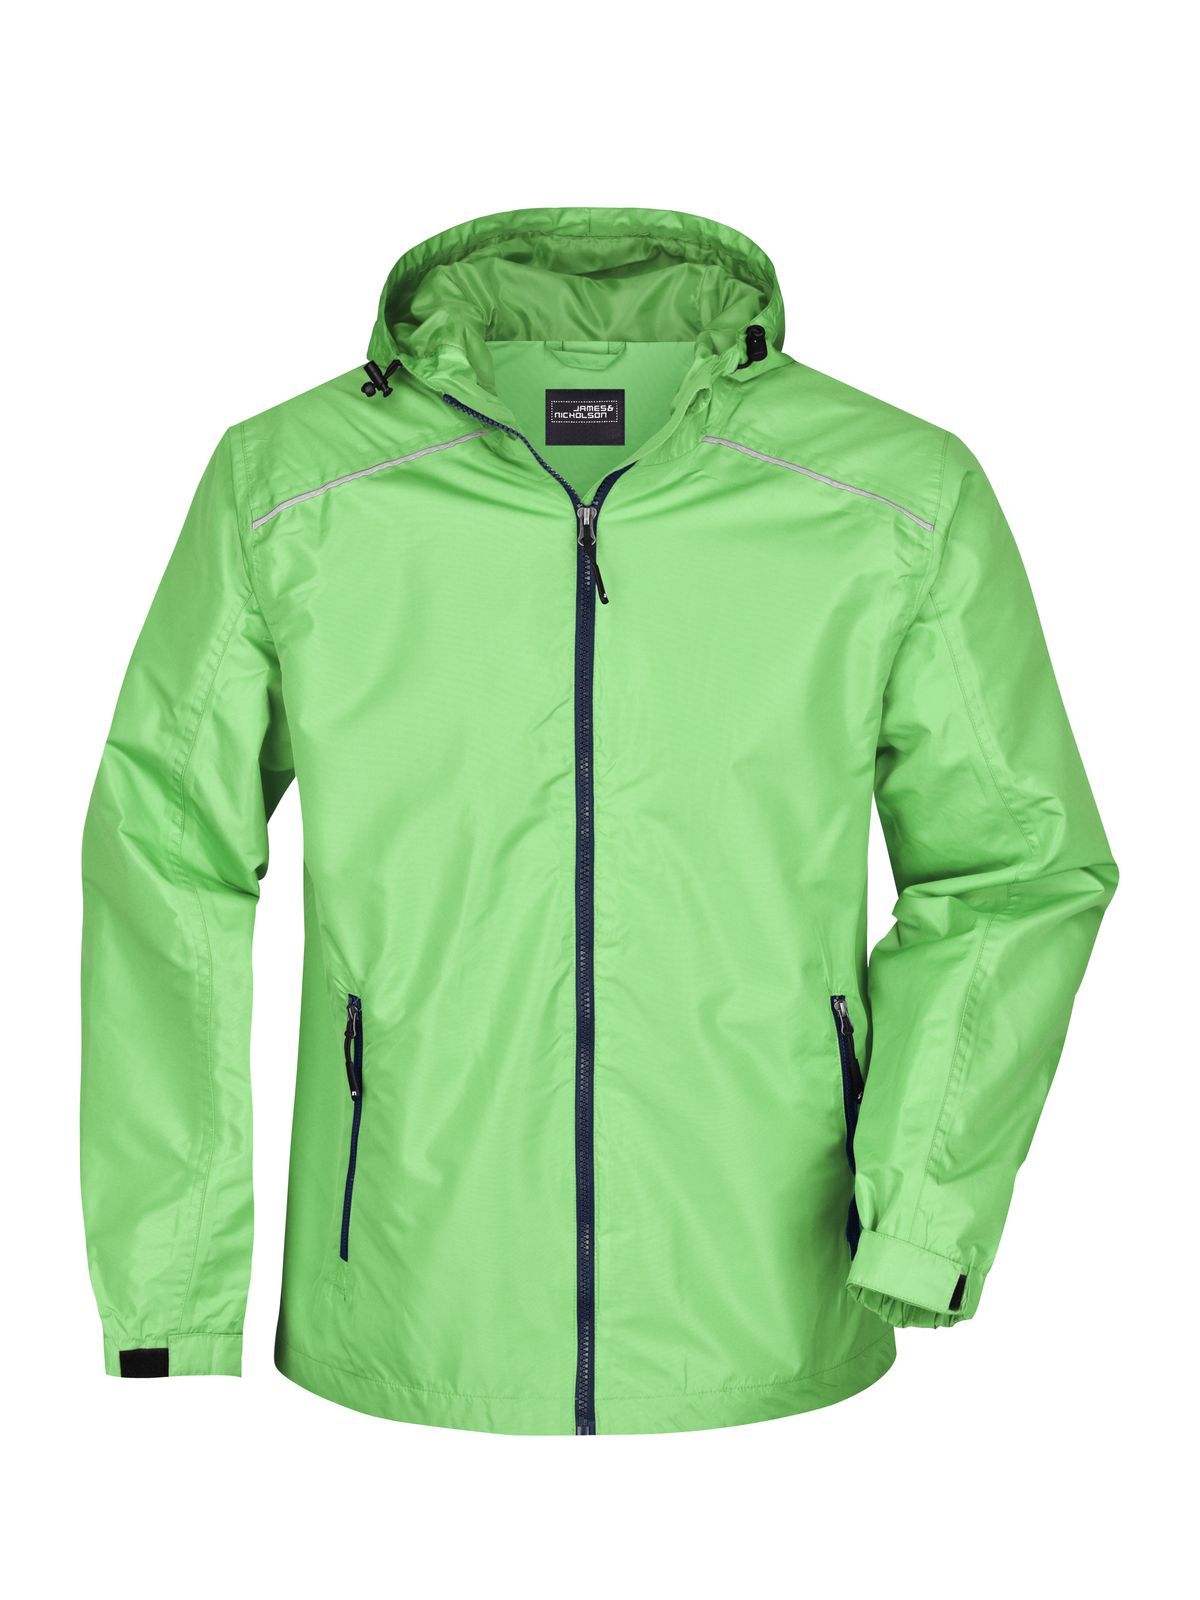 mens-rain-jacket-spring-green-navy.webp